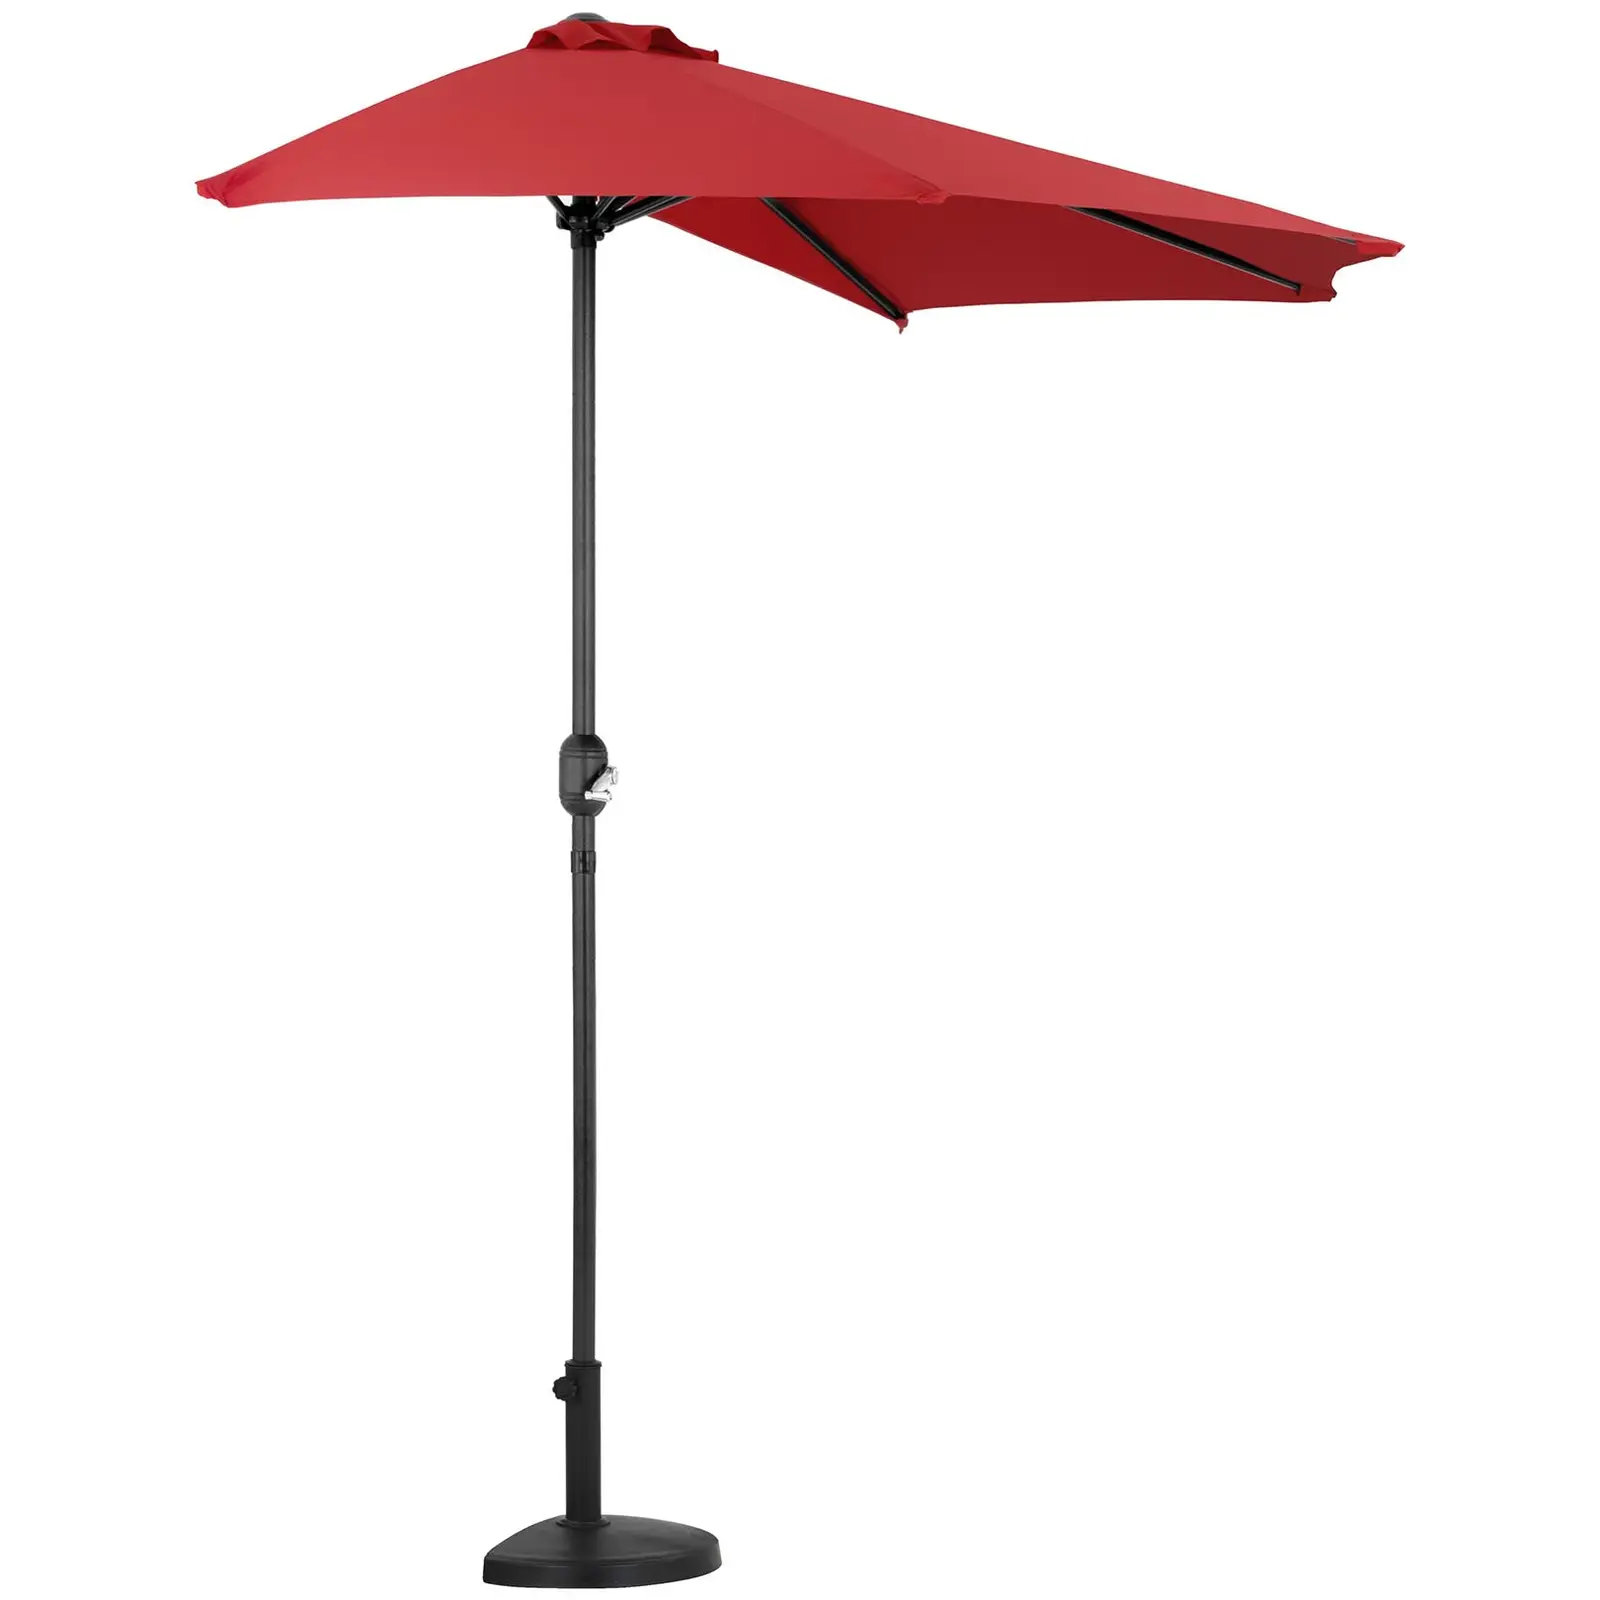 Halv parasollfot - För stångdiametrar på 38–48 mm